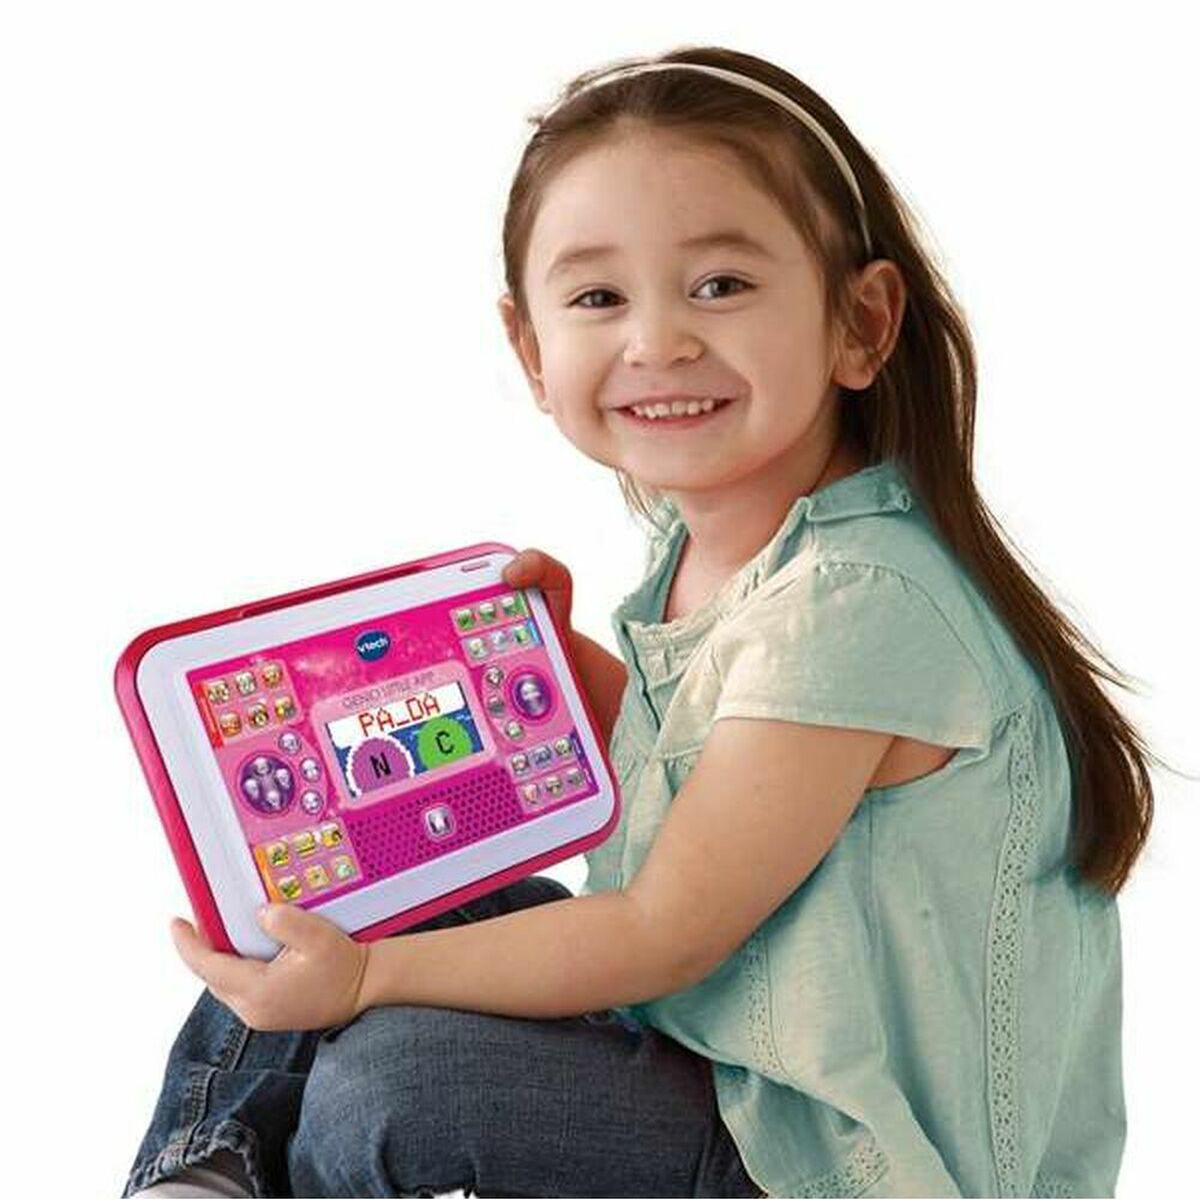 Toy computer Vtech Little App ES 18 x 26 x 4 cm Pinkki